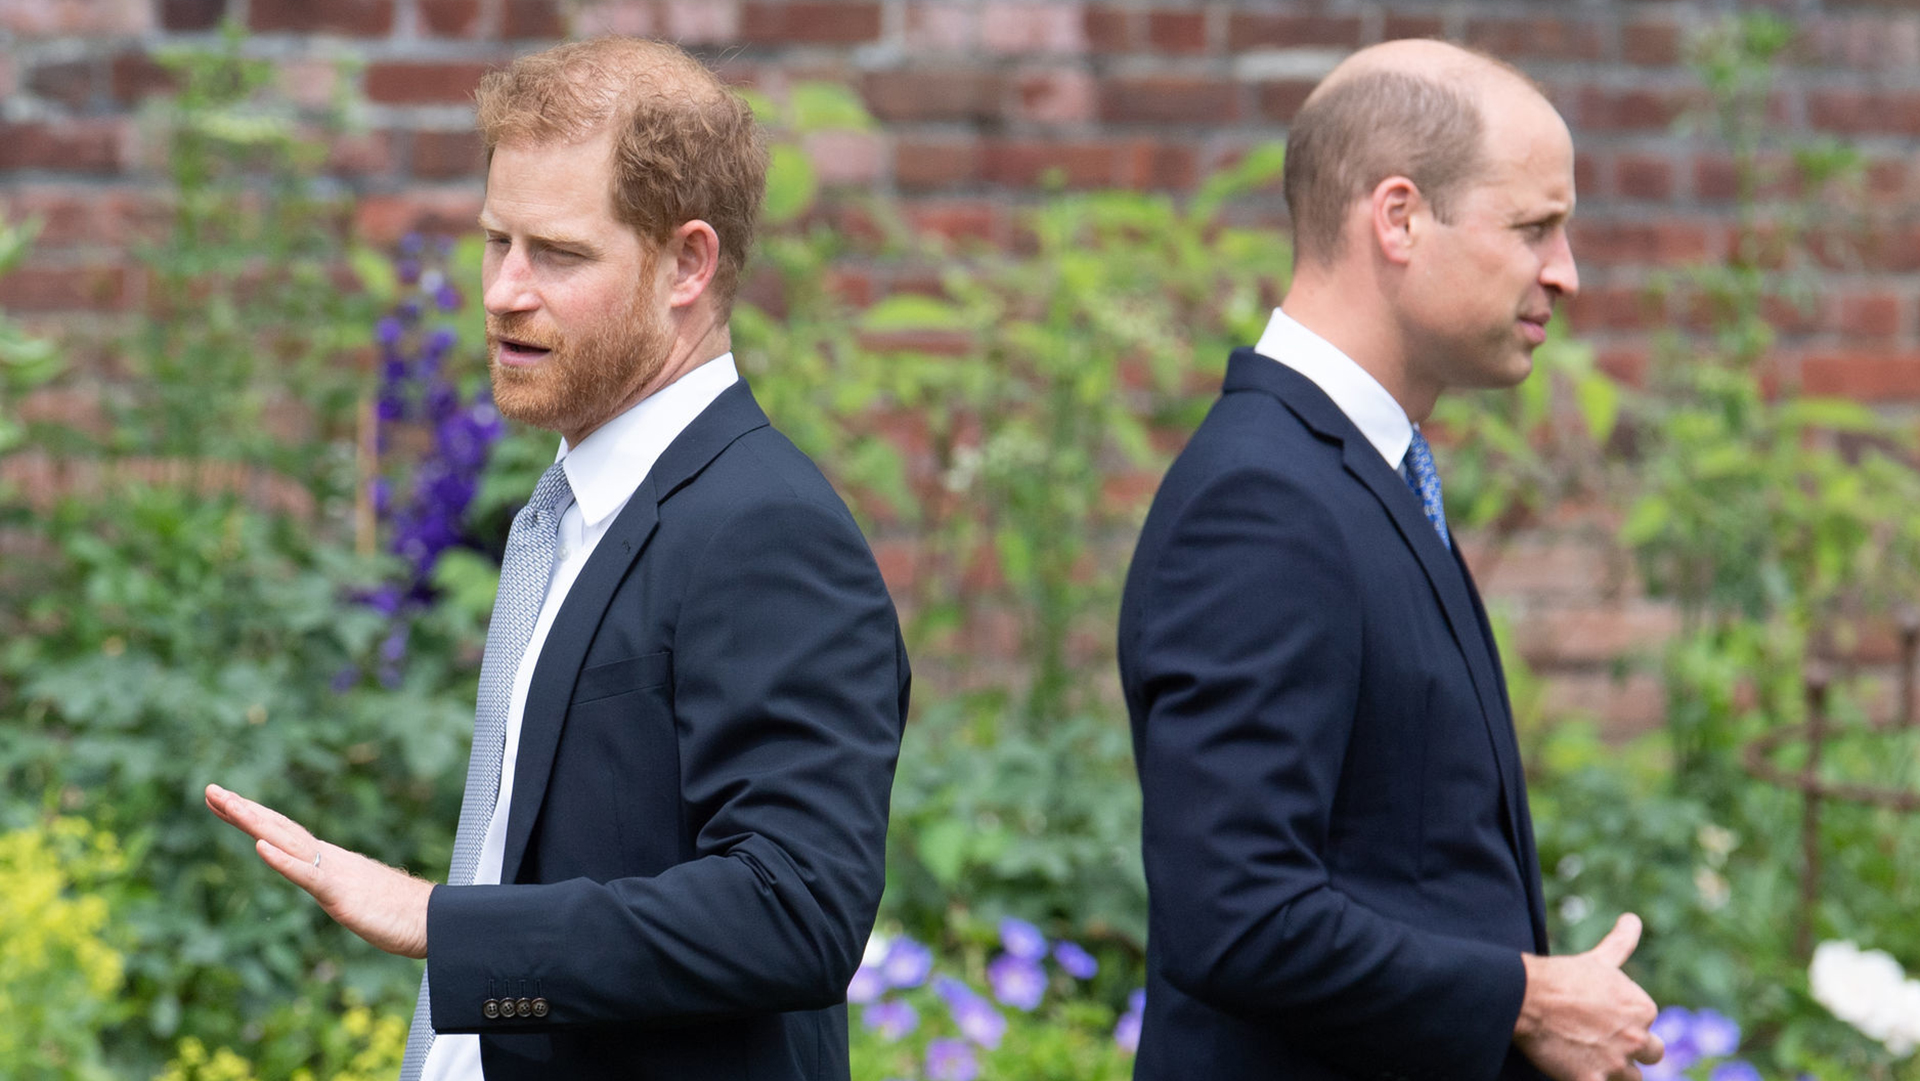 La relación entre el príncipe William y el príncipe Harry sigue distante (Getty Images)